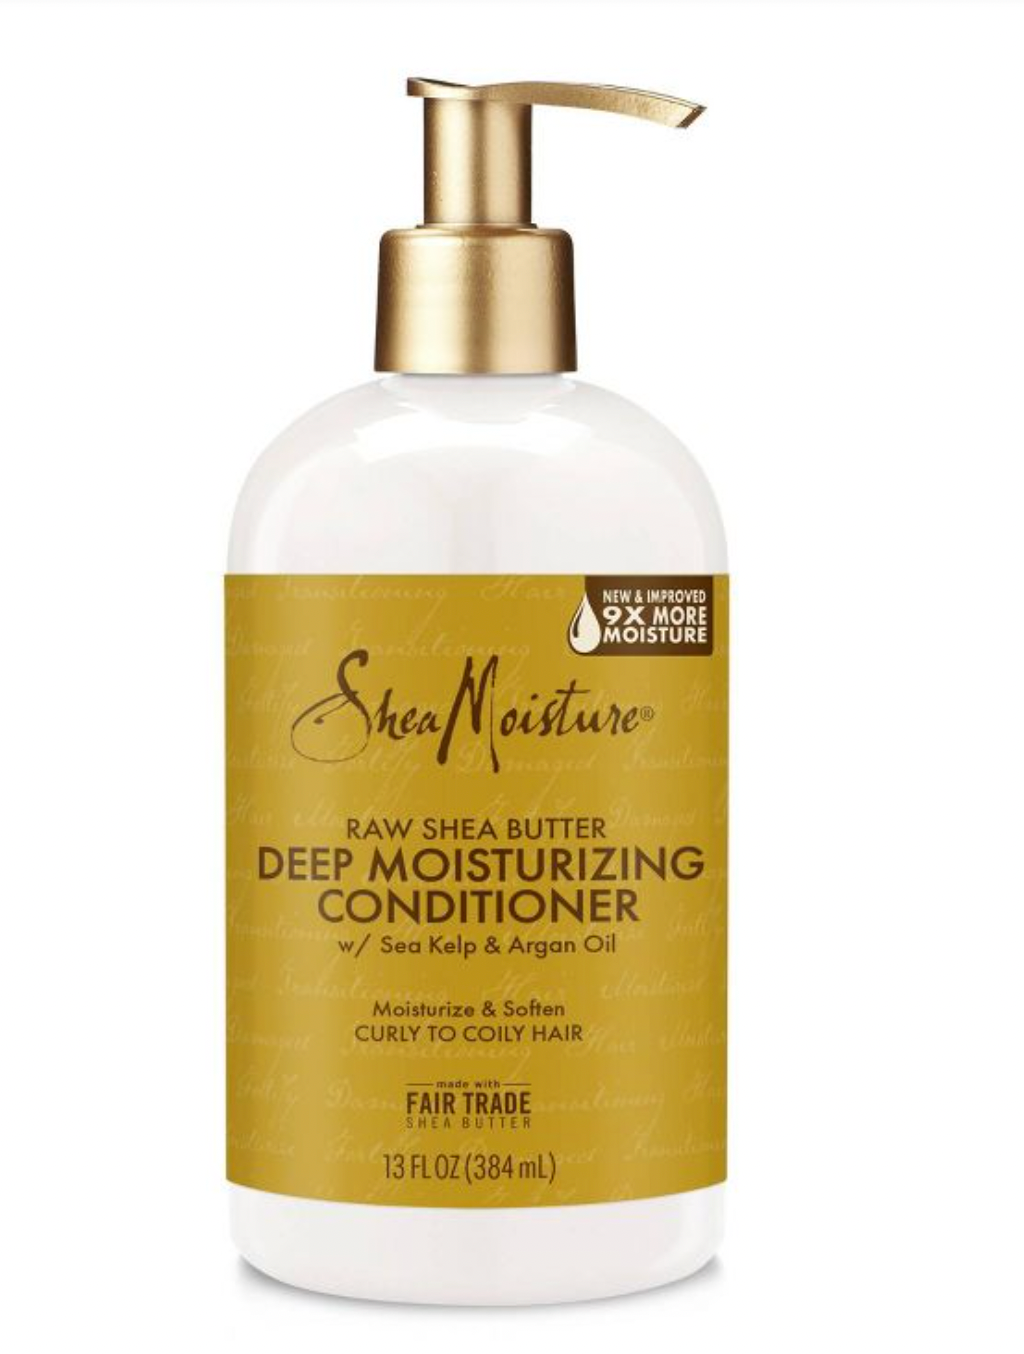 SHEA MOISTURE Raw Shea Butter Deep moisture Conditioner